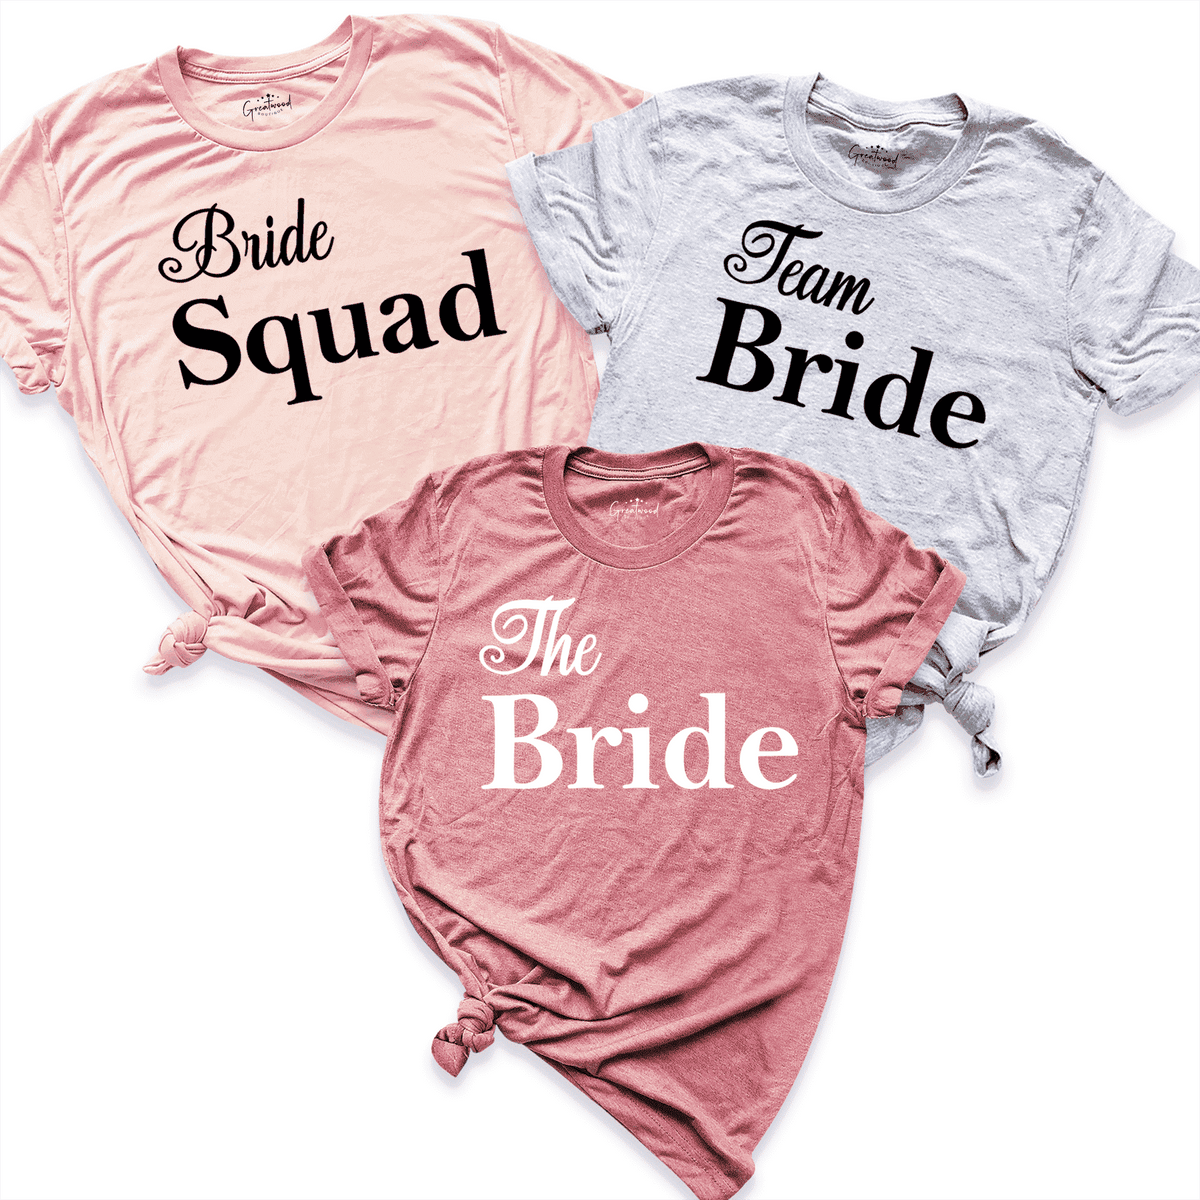 Custom T-Shirts for Team Bride Softball! - Shirt Design Ideas